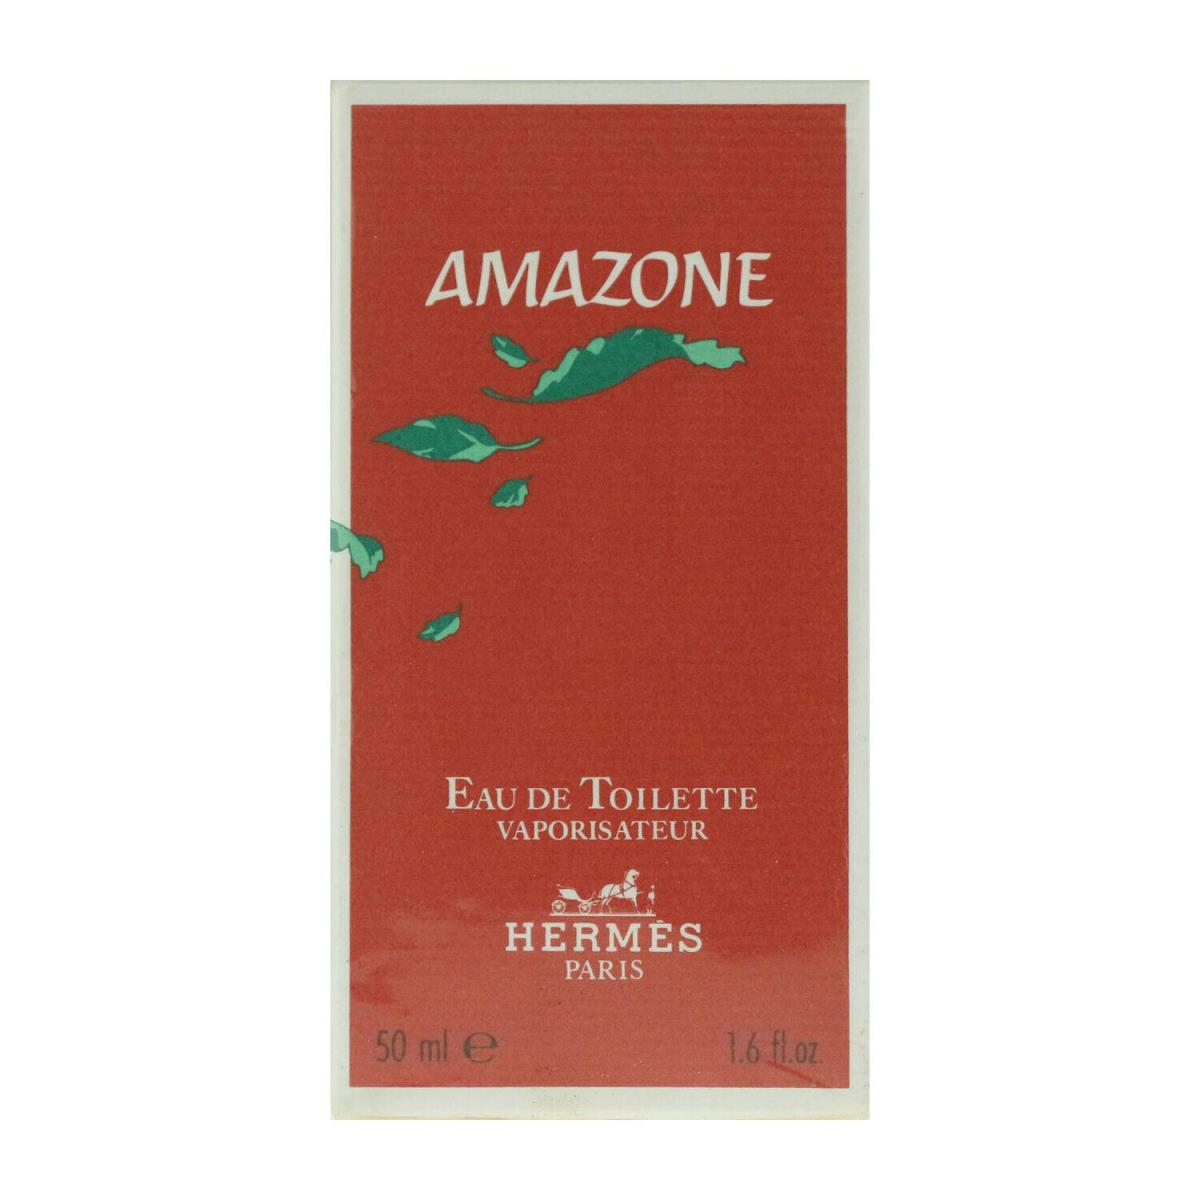 Amazone by Hermes 1.6 oz / 50 ml Eau De Toilette Spray For Women